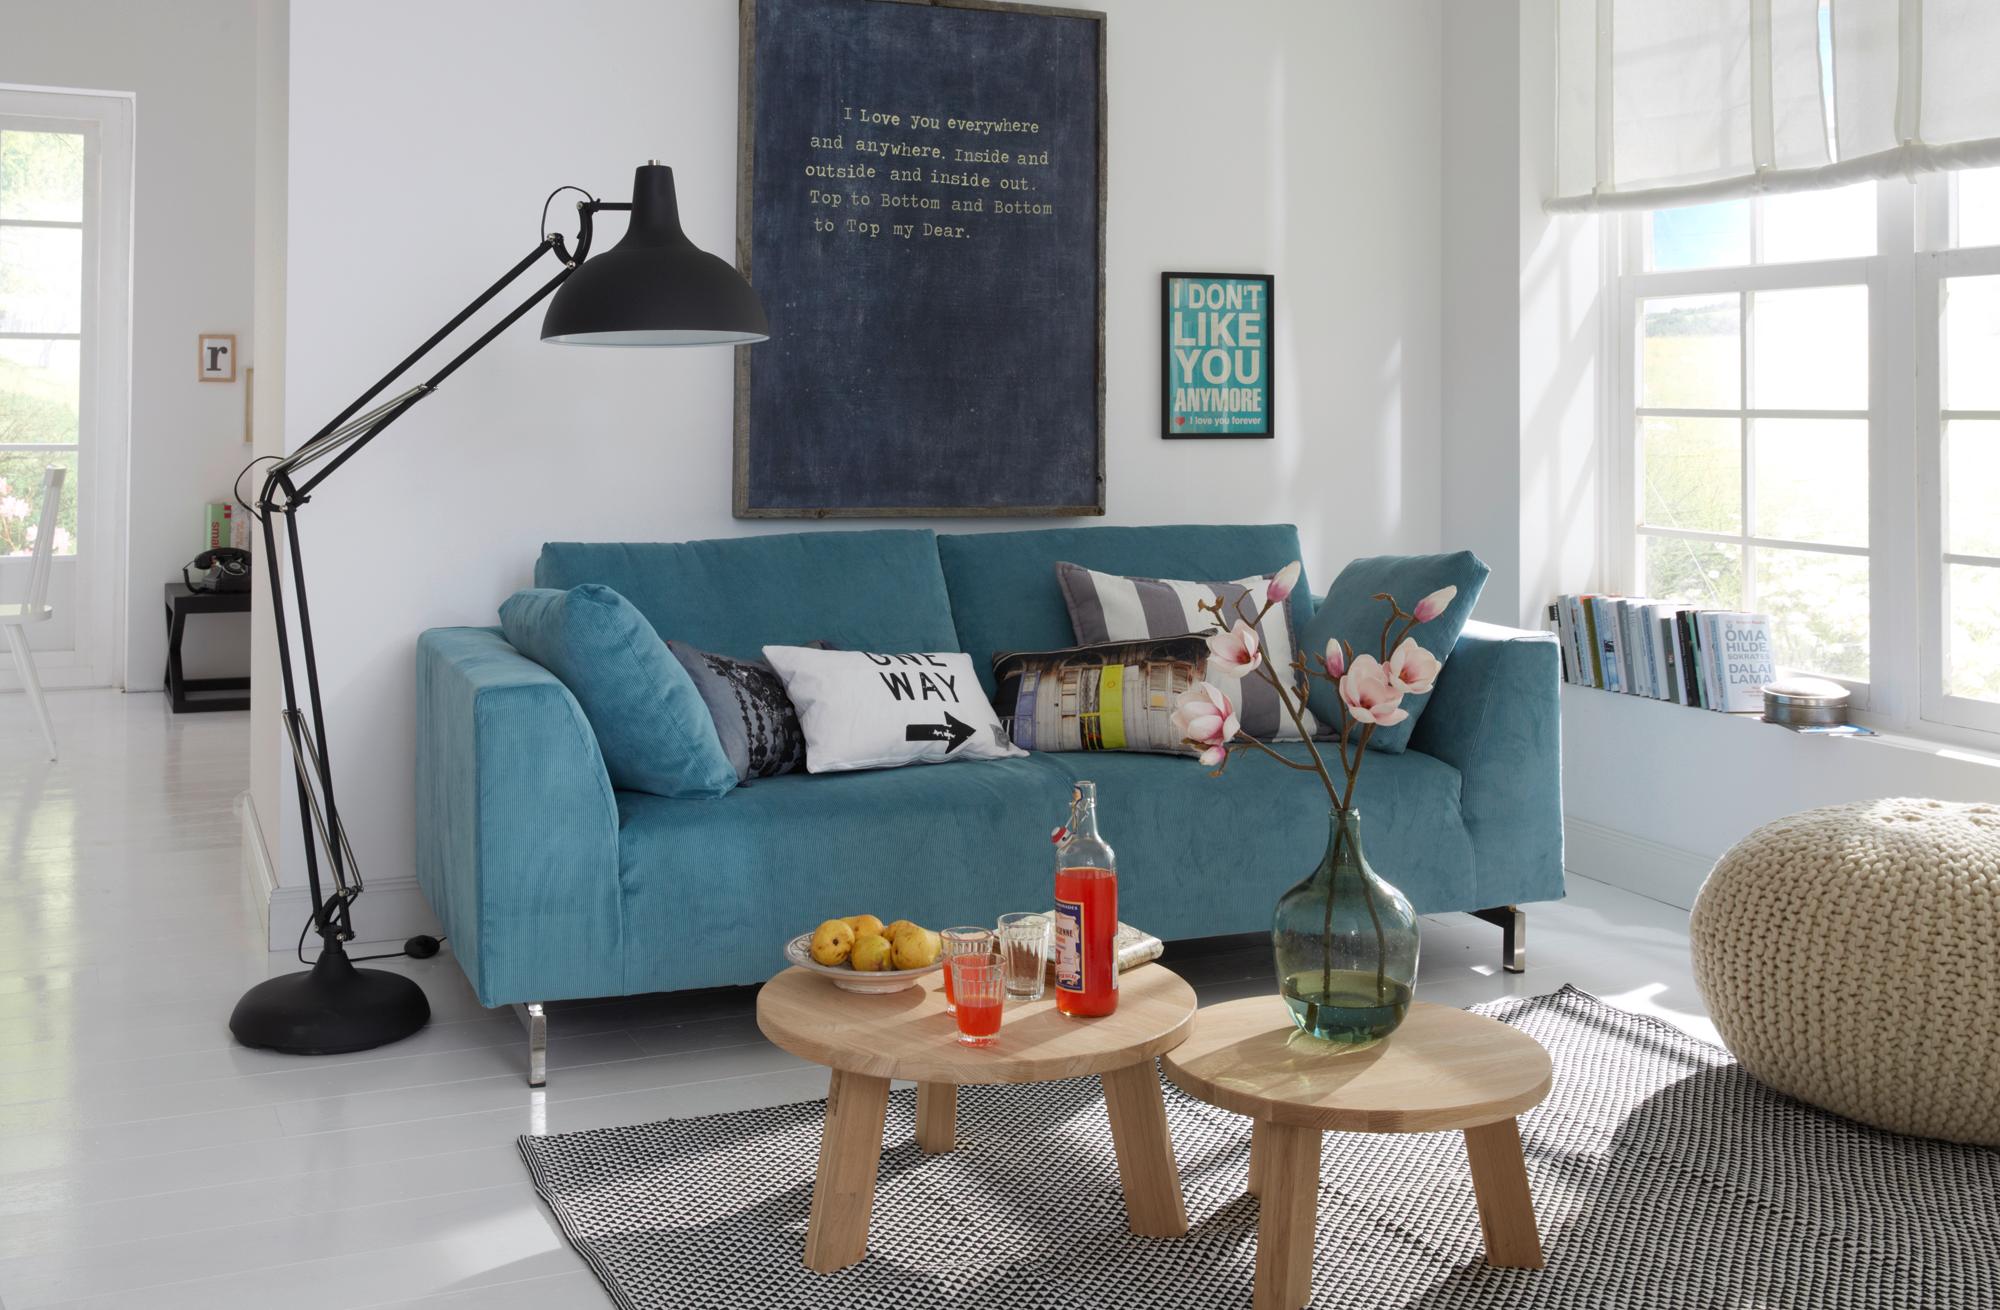 3er Sofa mit abnehmbaren Bezug aus Cord #couchtisch #teppich #stehlampe #sofa #blauessofa #rundercouchtisch #zimmerpflanze ©Car Selbstbaumöbel